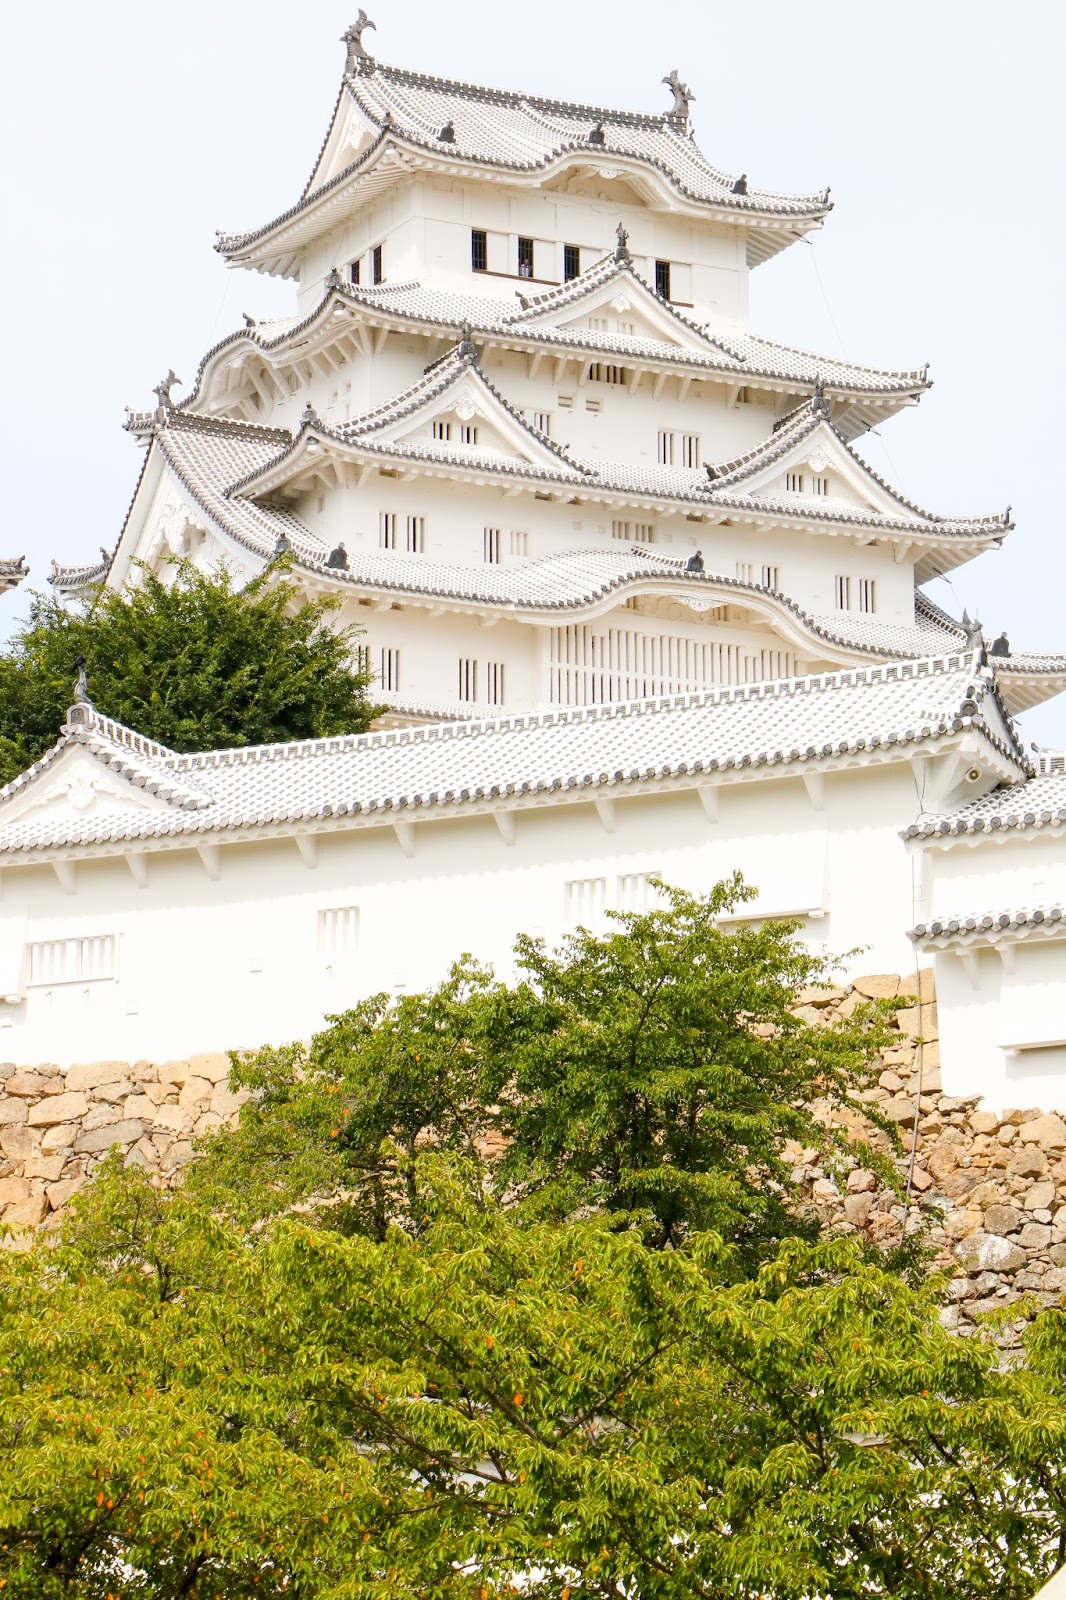 Himeji Castle - The largest castle in Japan